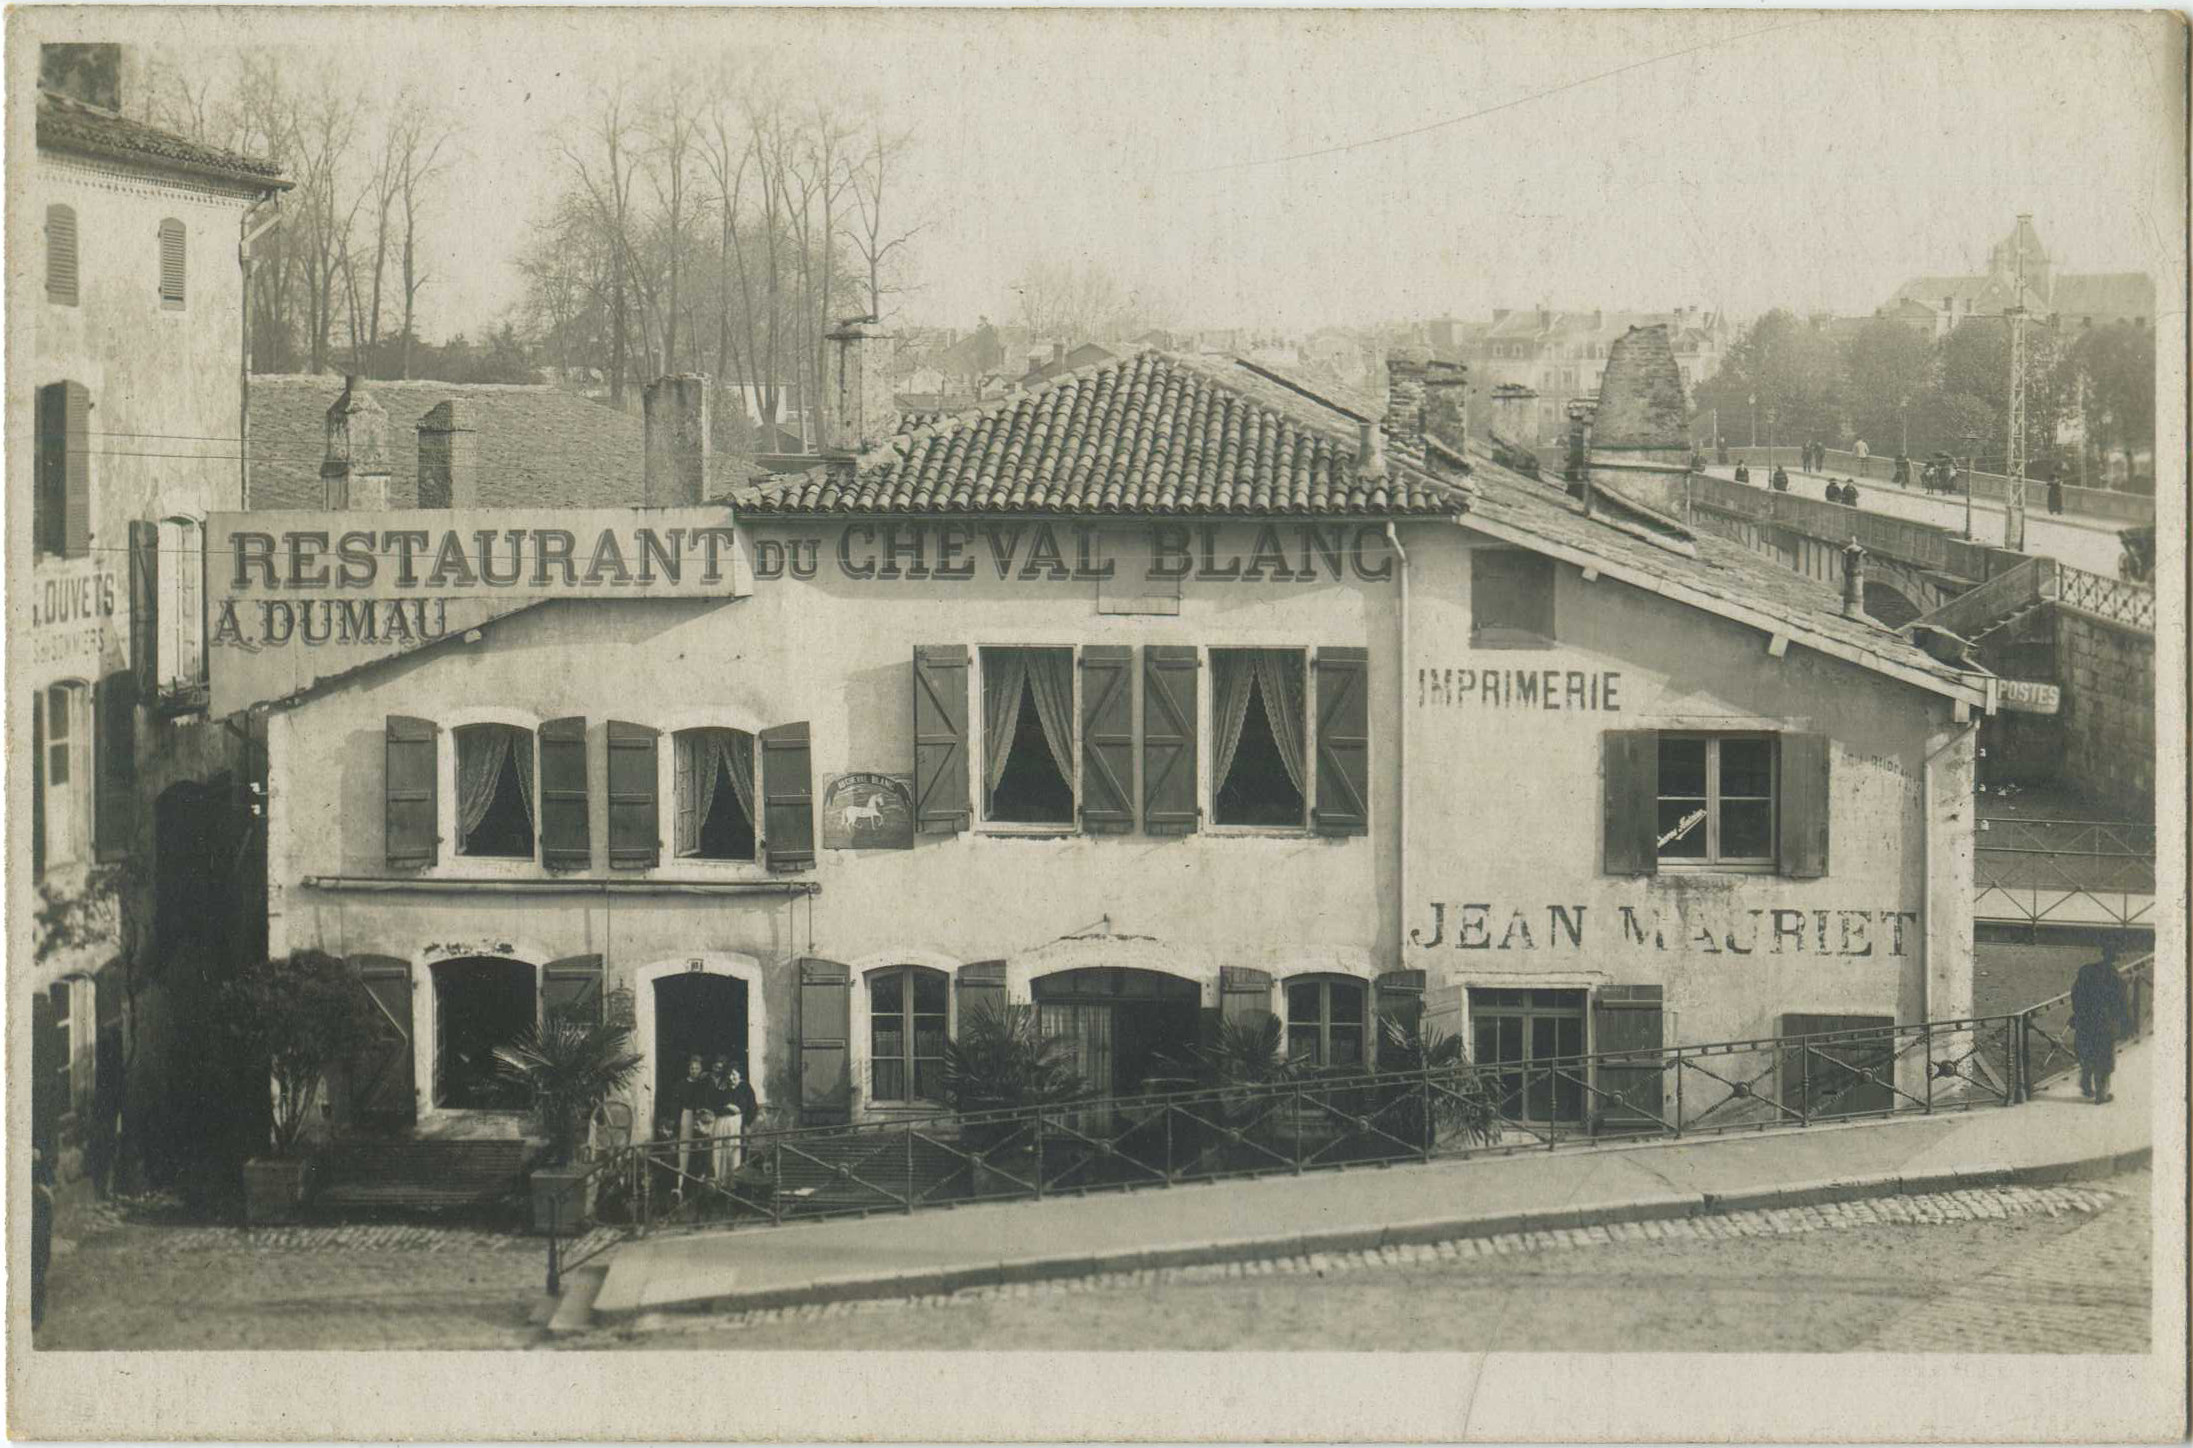 Dax - Carte photo - Restaurant du Cheval Blanc et Imprimerie Jean Mauriet